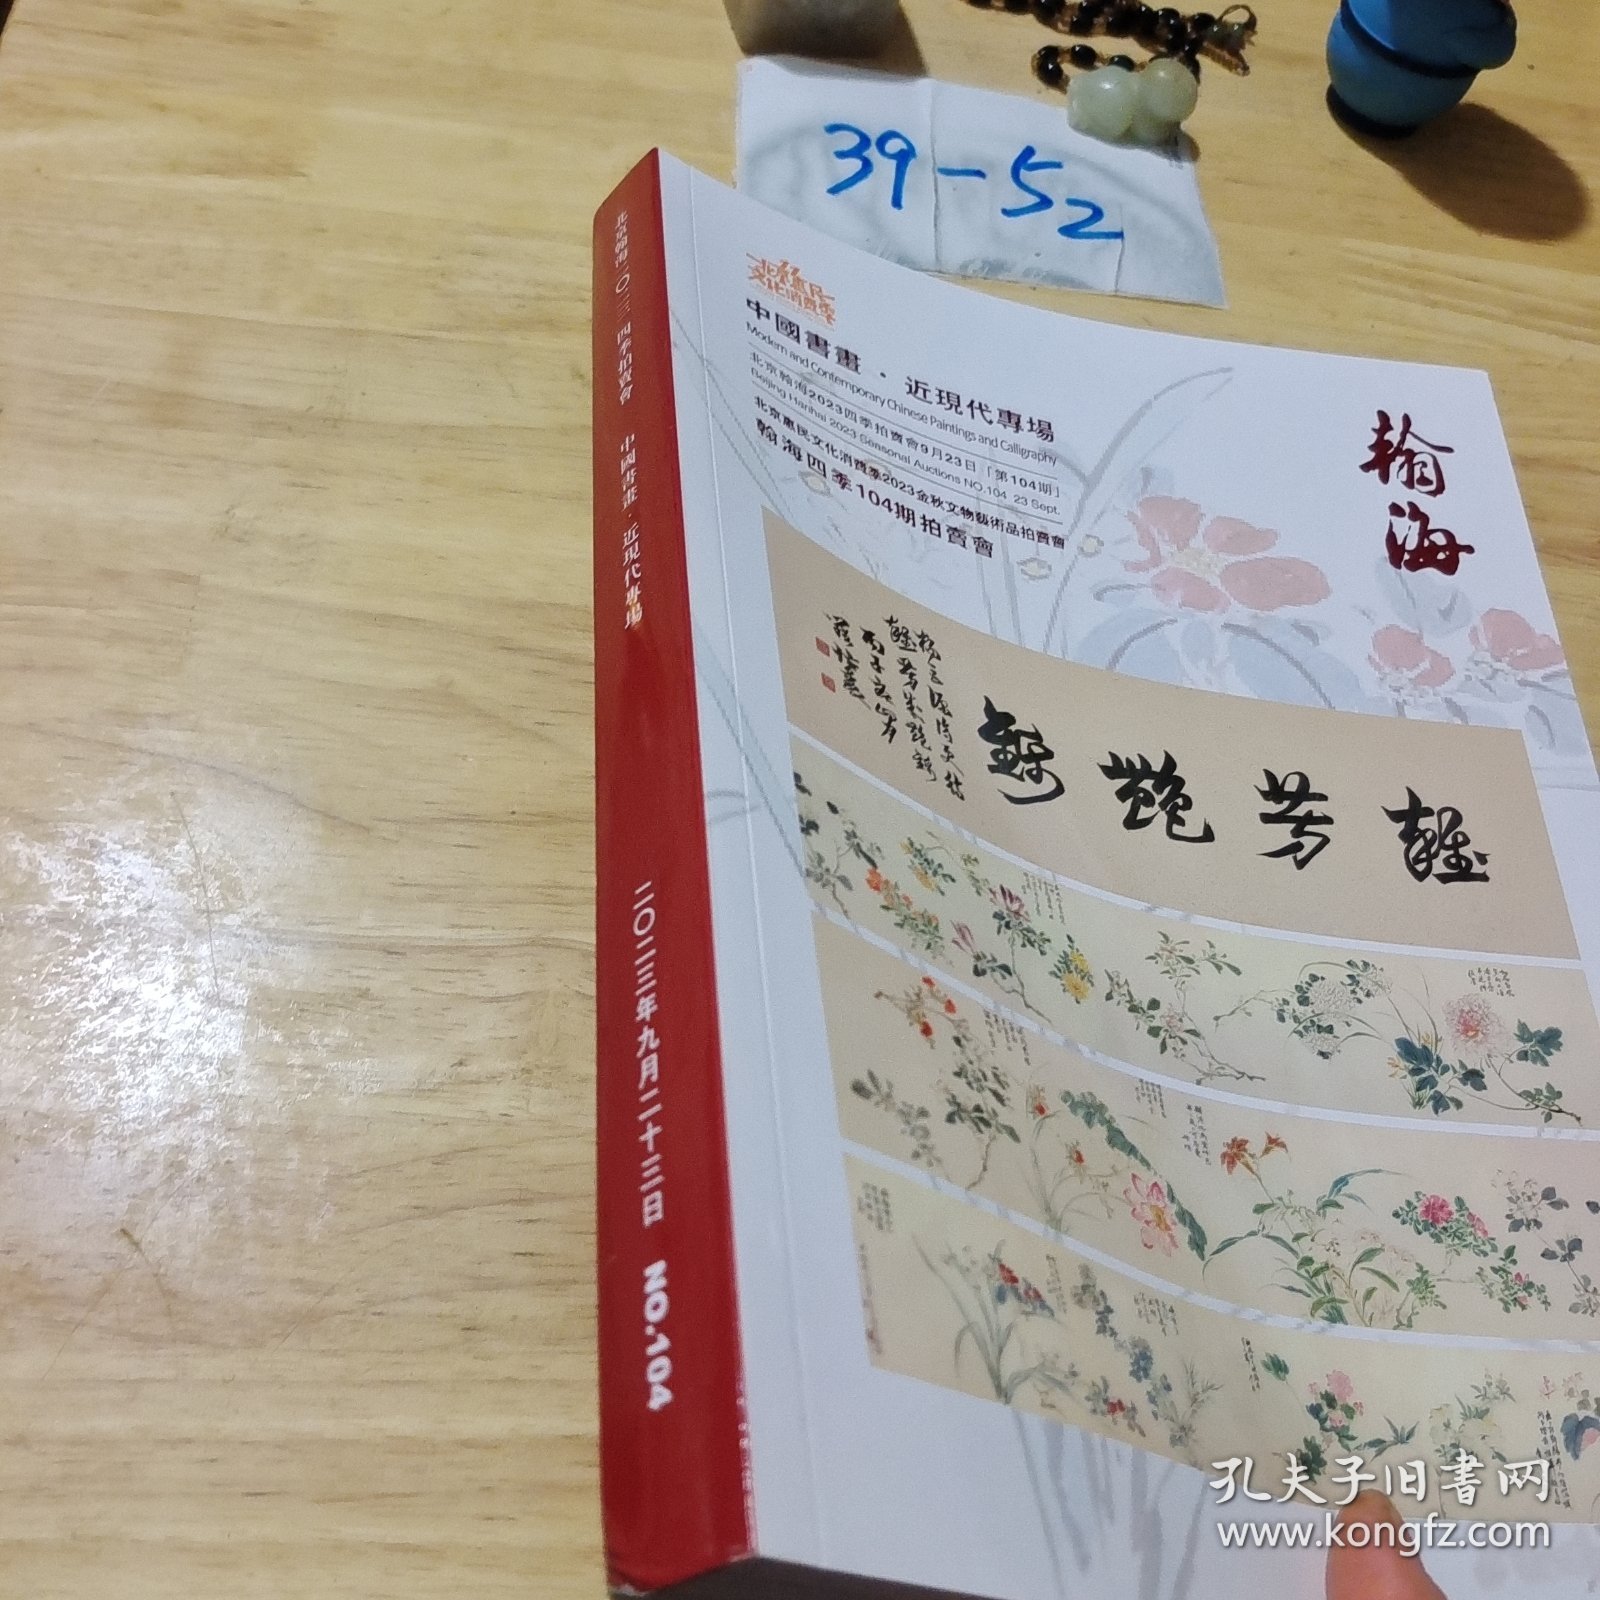 中国书画 近现代专场 瀚海四季104期拍卖会